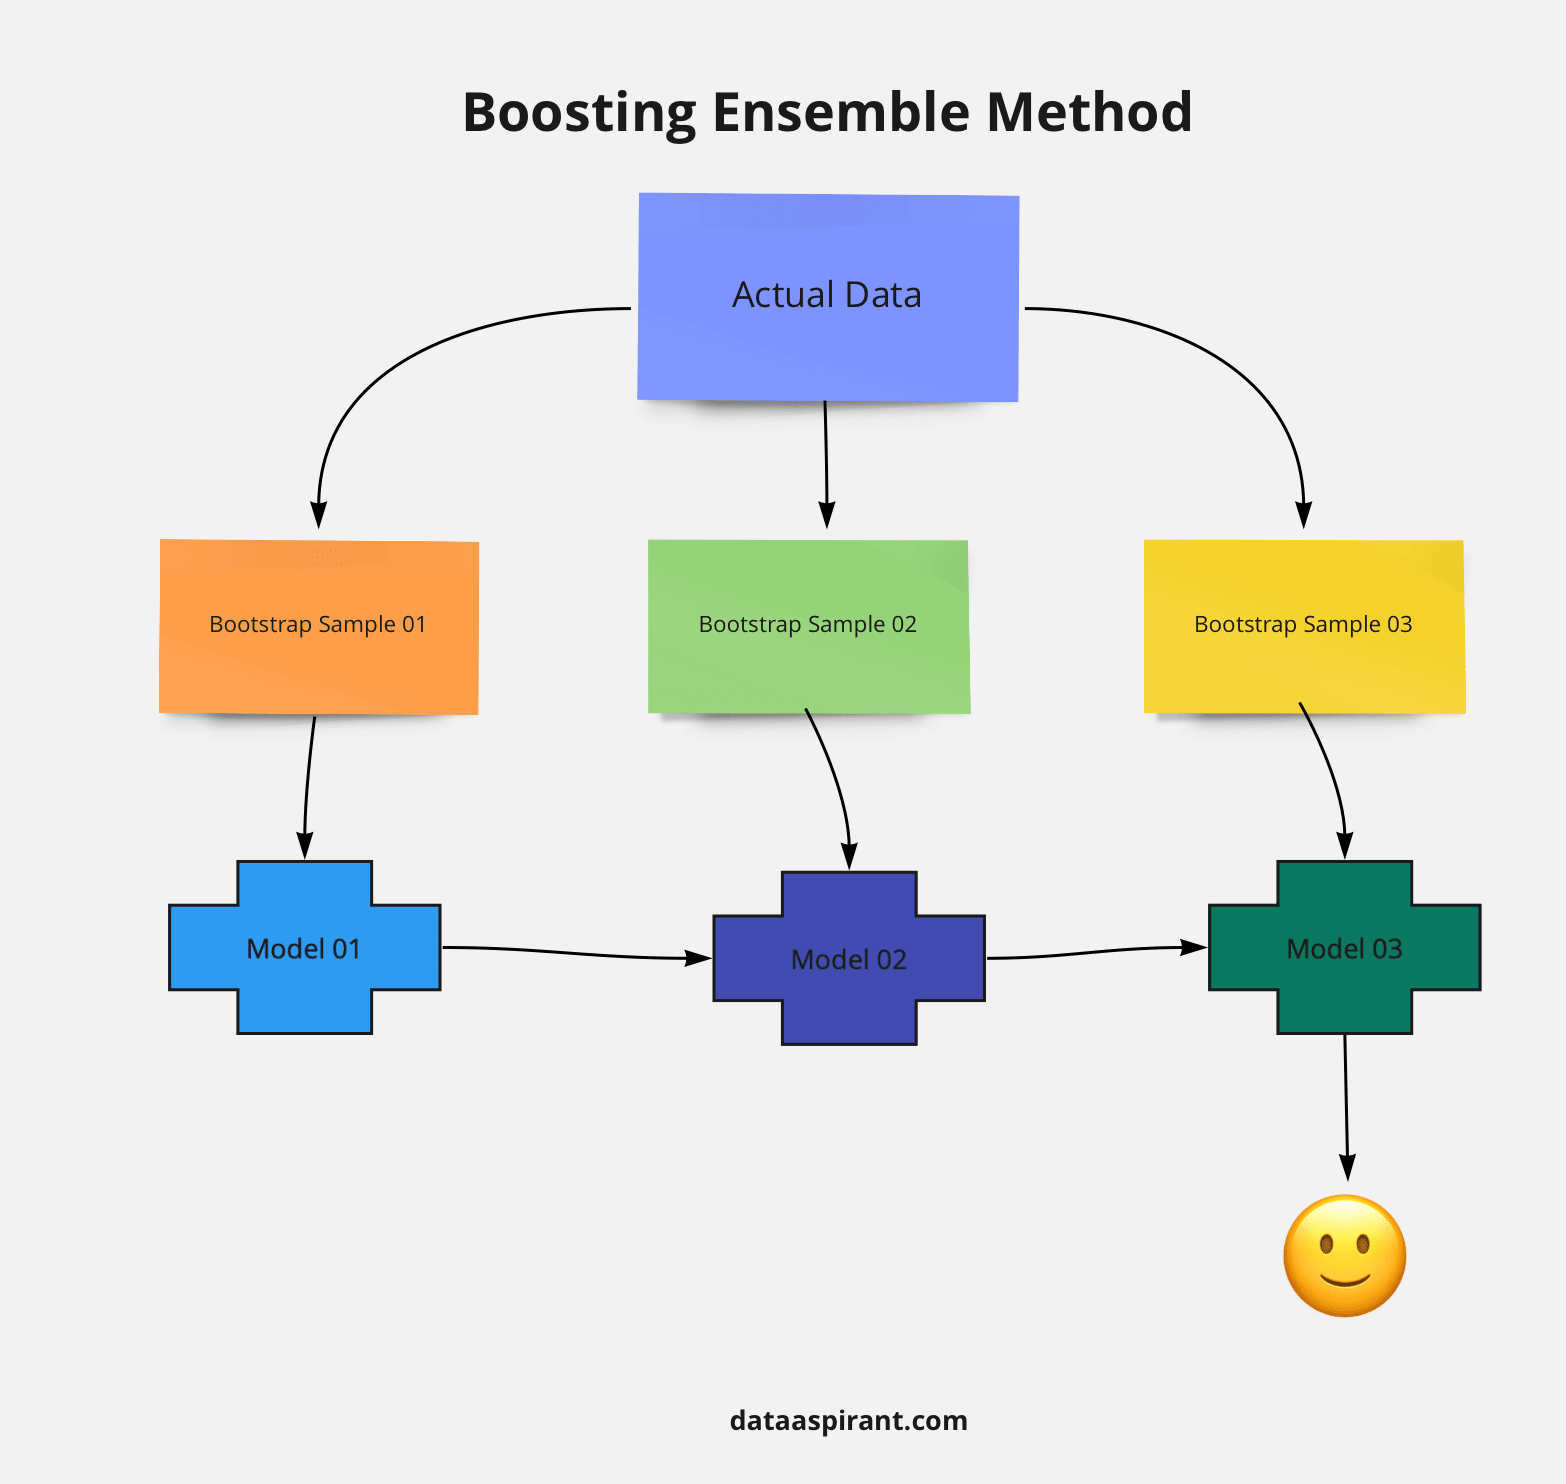 Boosting ensemble method